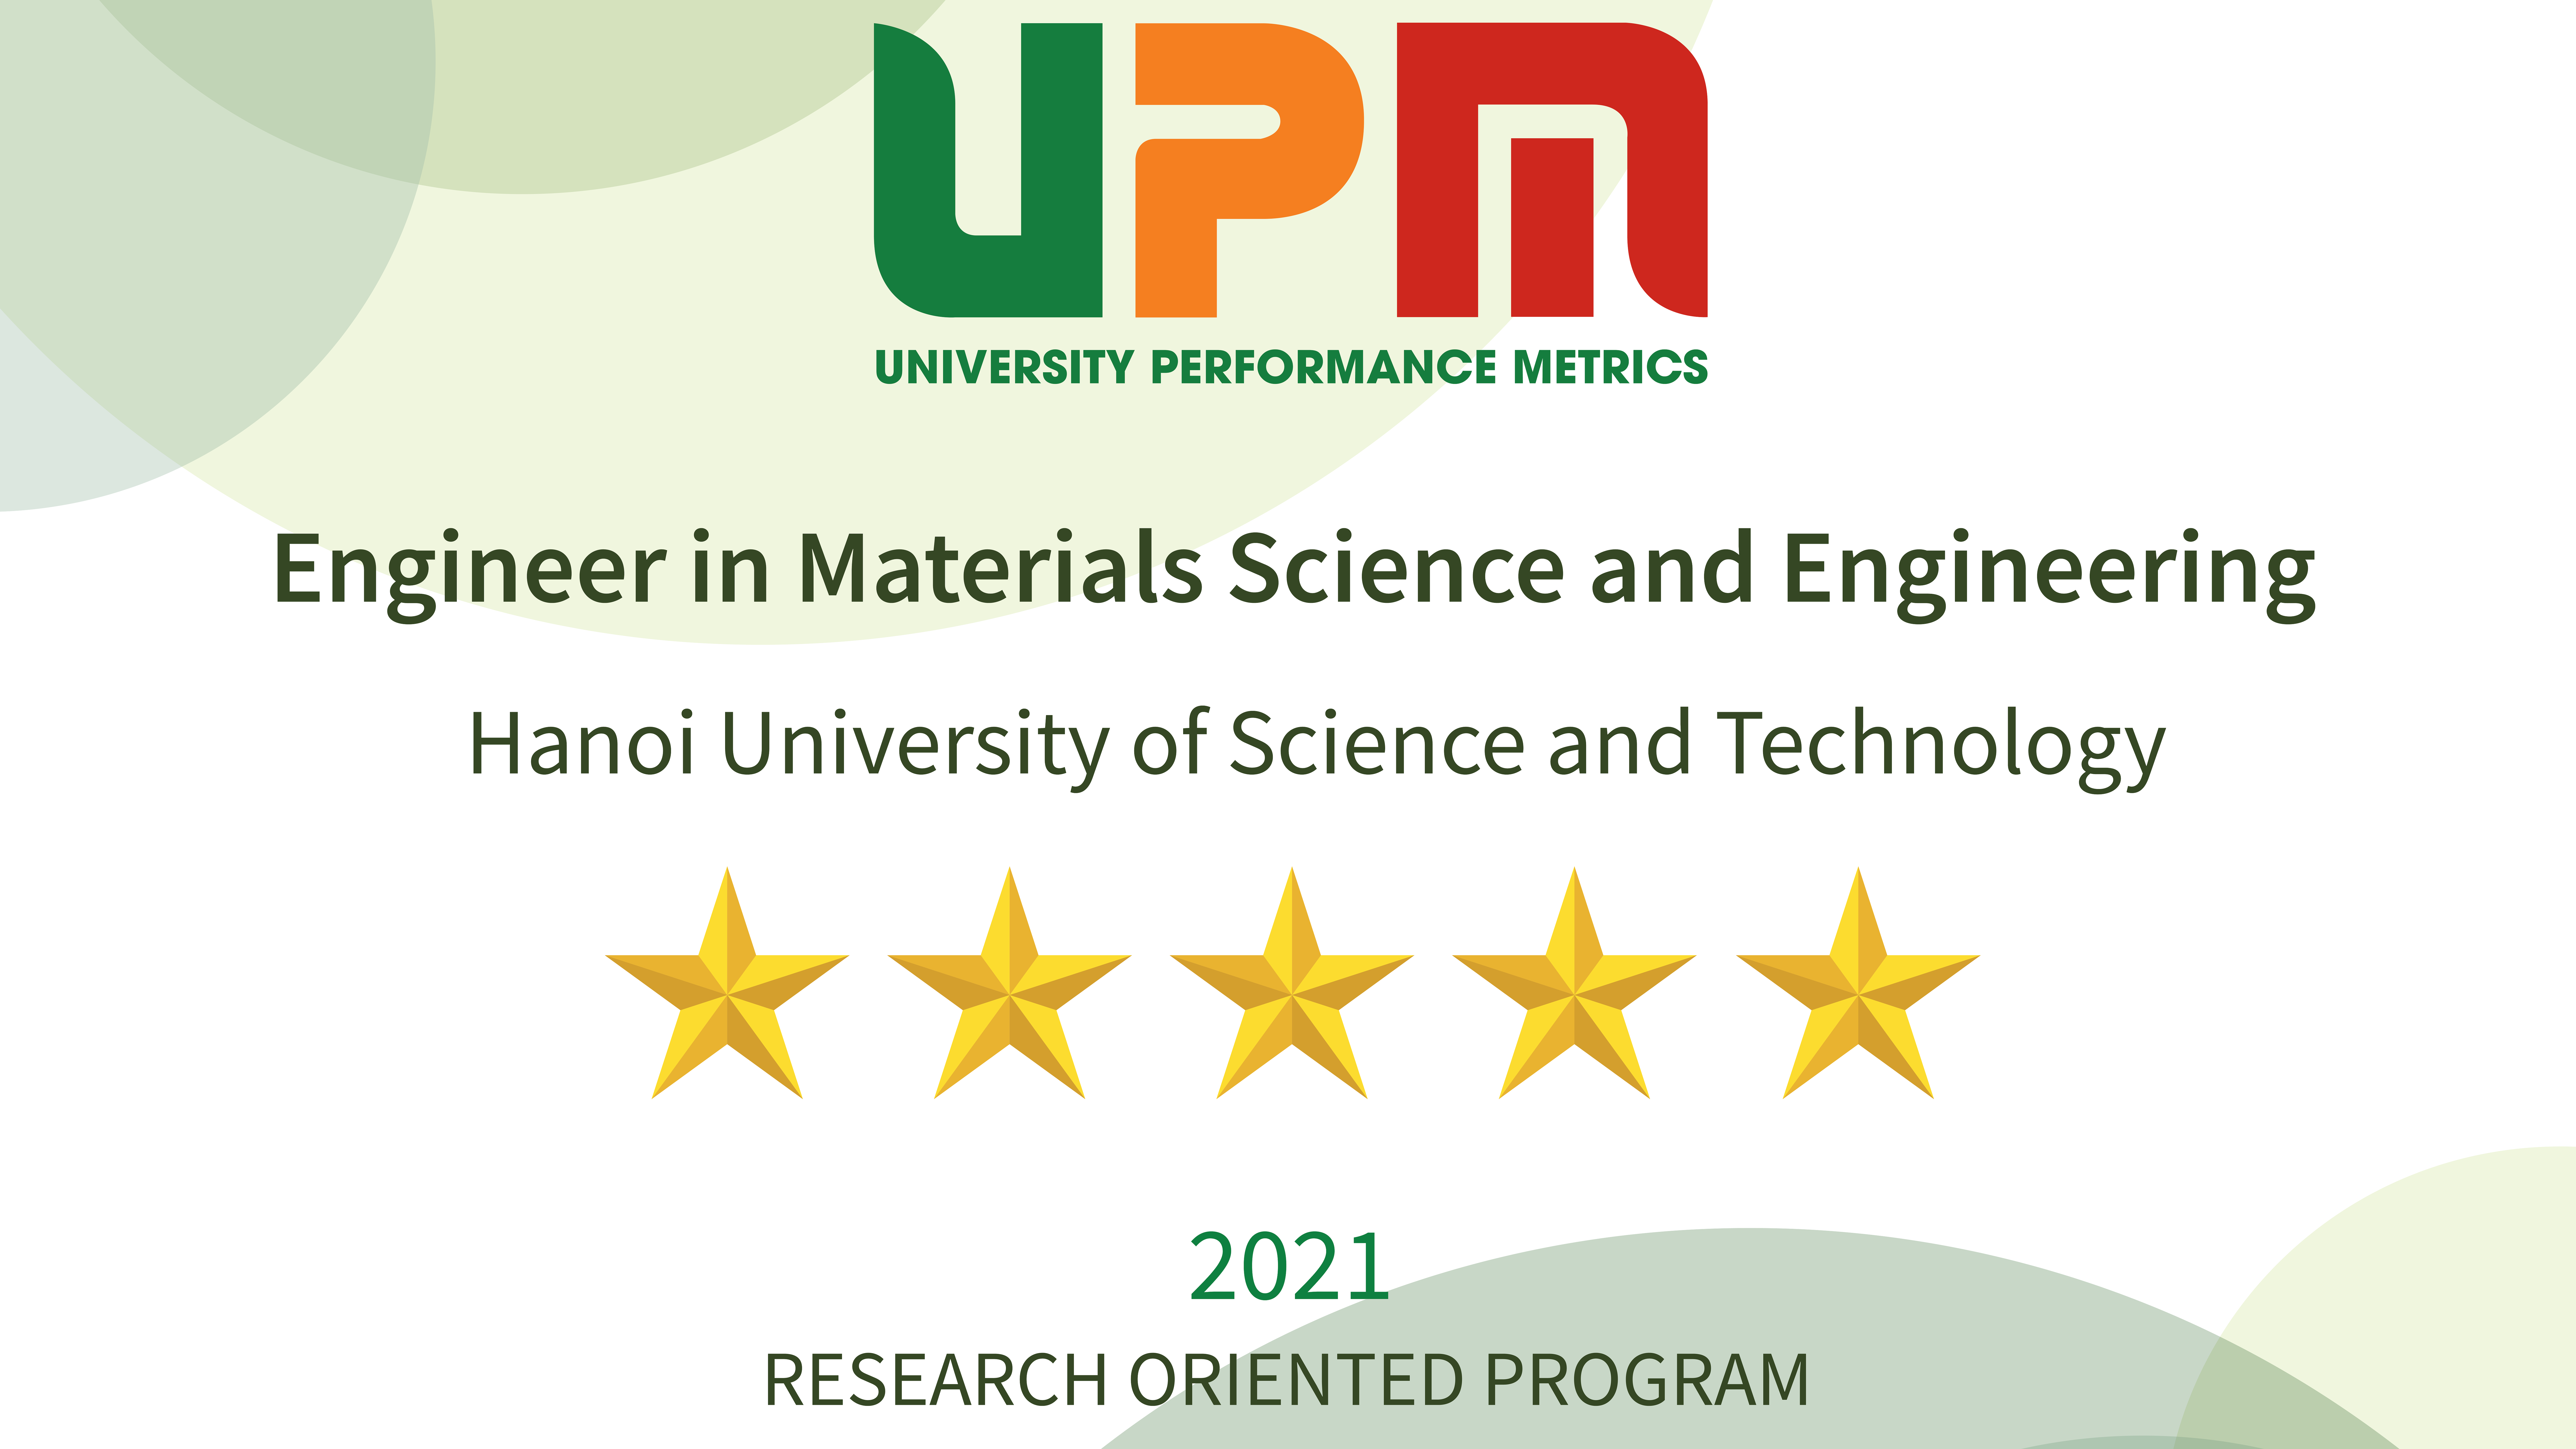 Chương trình đào tạo Khoa học và Kỹ thuật vật liệu đạt chuẩn 5 sao theo UPM